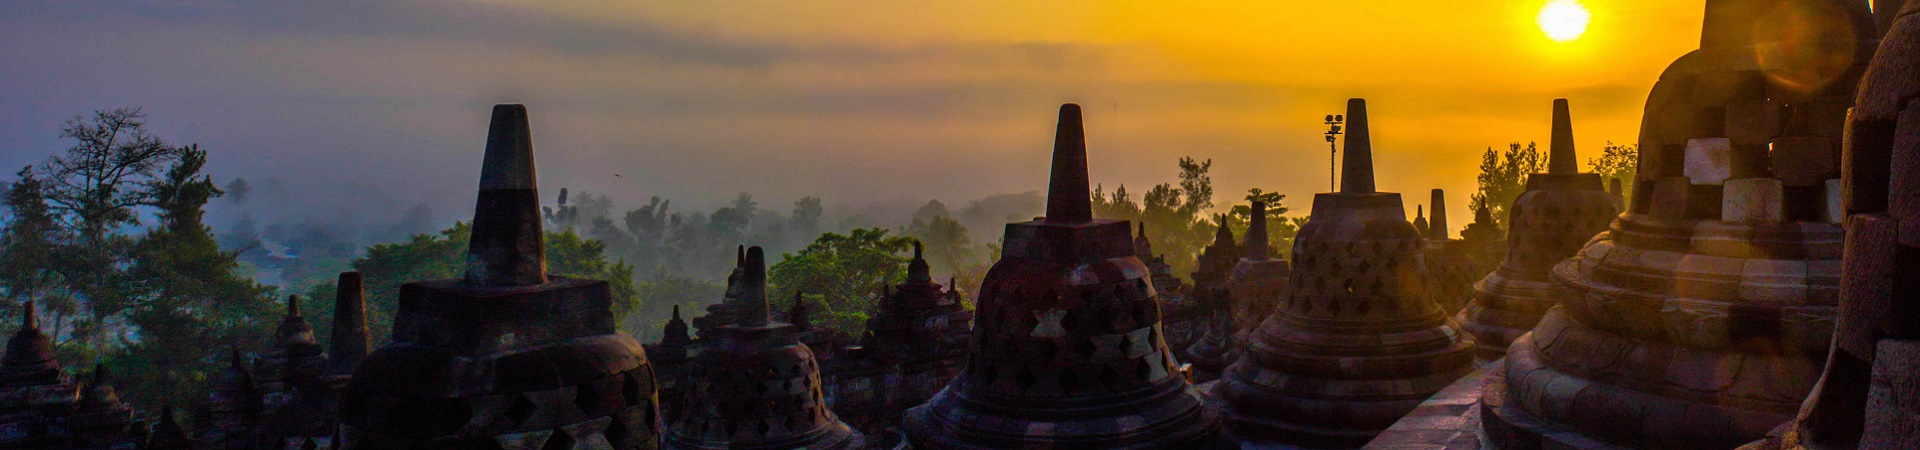 Image of Borobudur and Candirejo